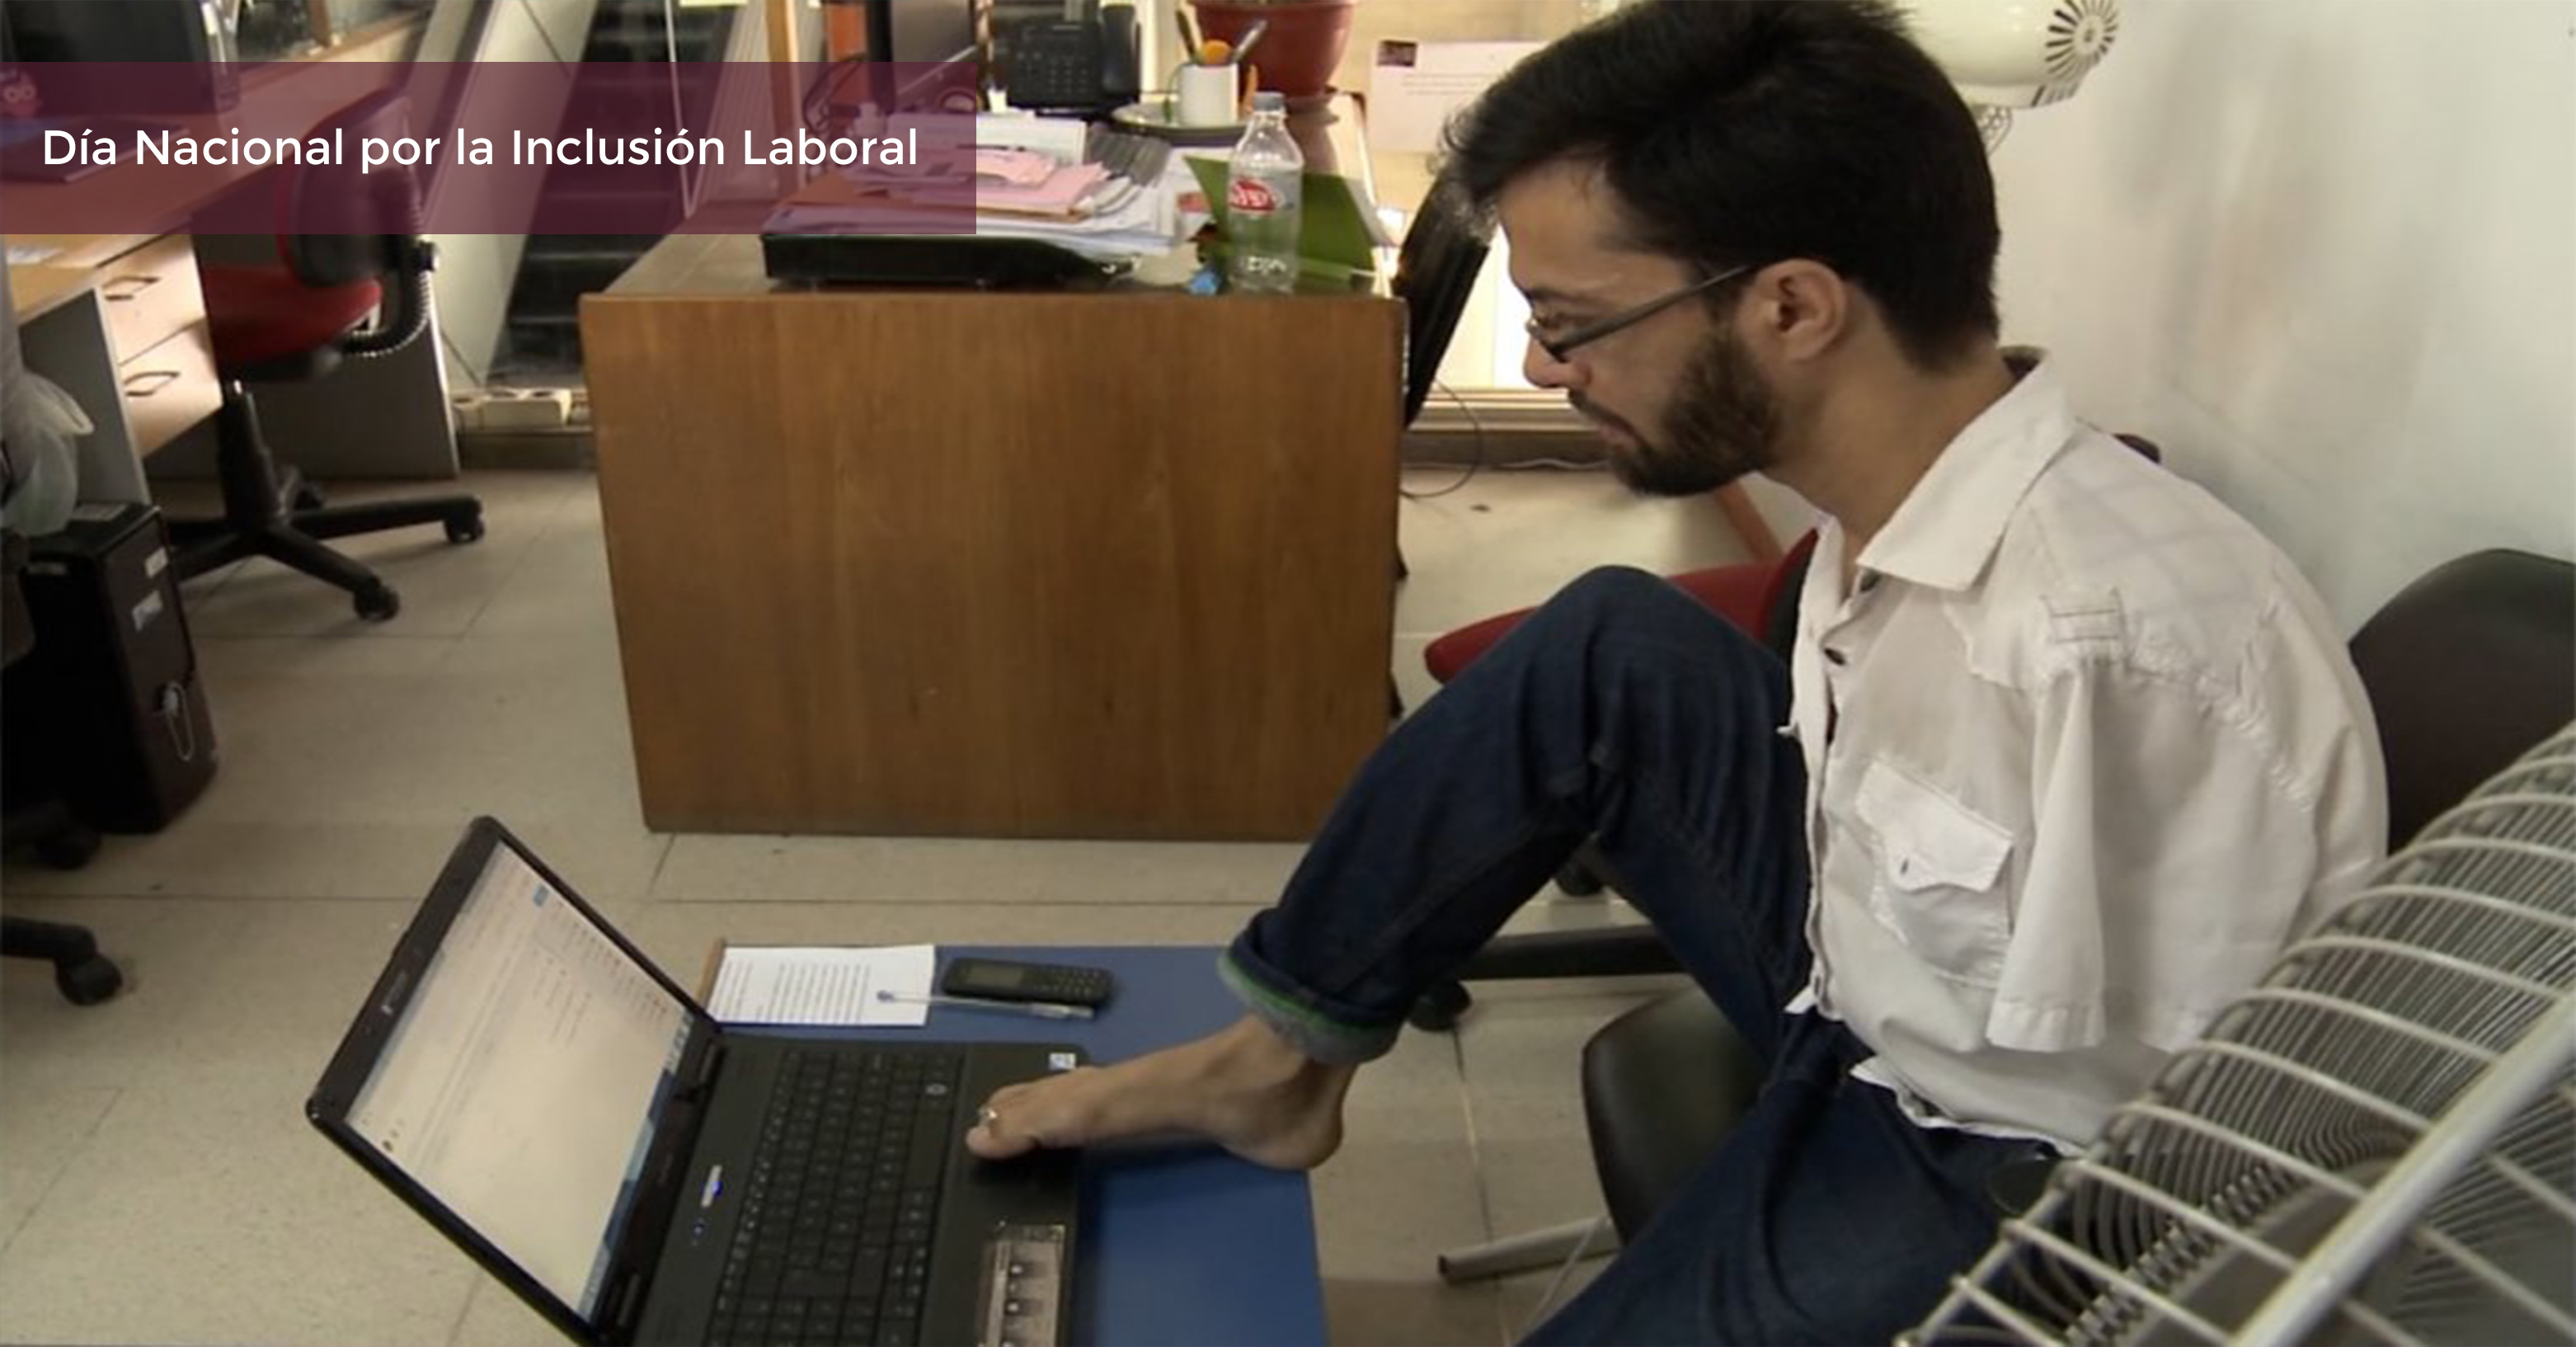 Joven sin brazos trabaja manejando la computadora con los pies en una oficina.